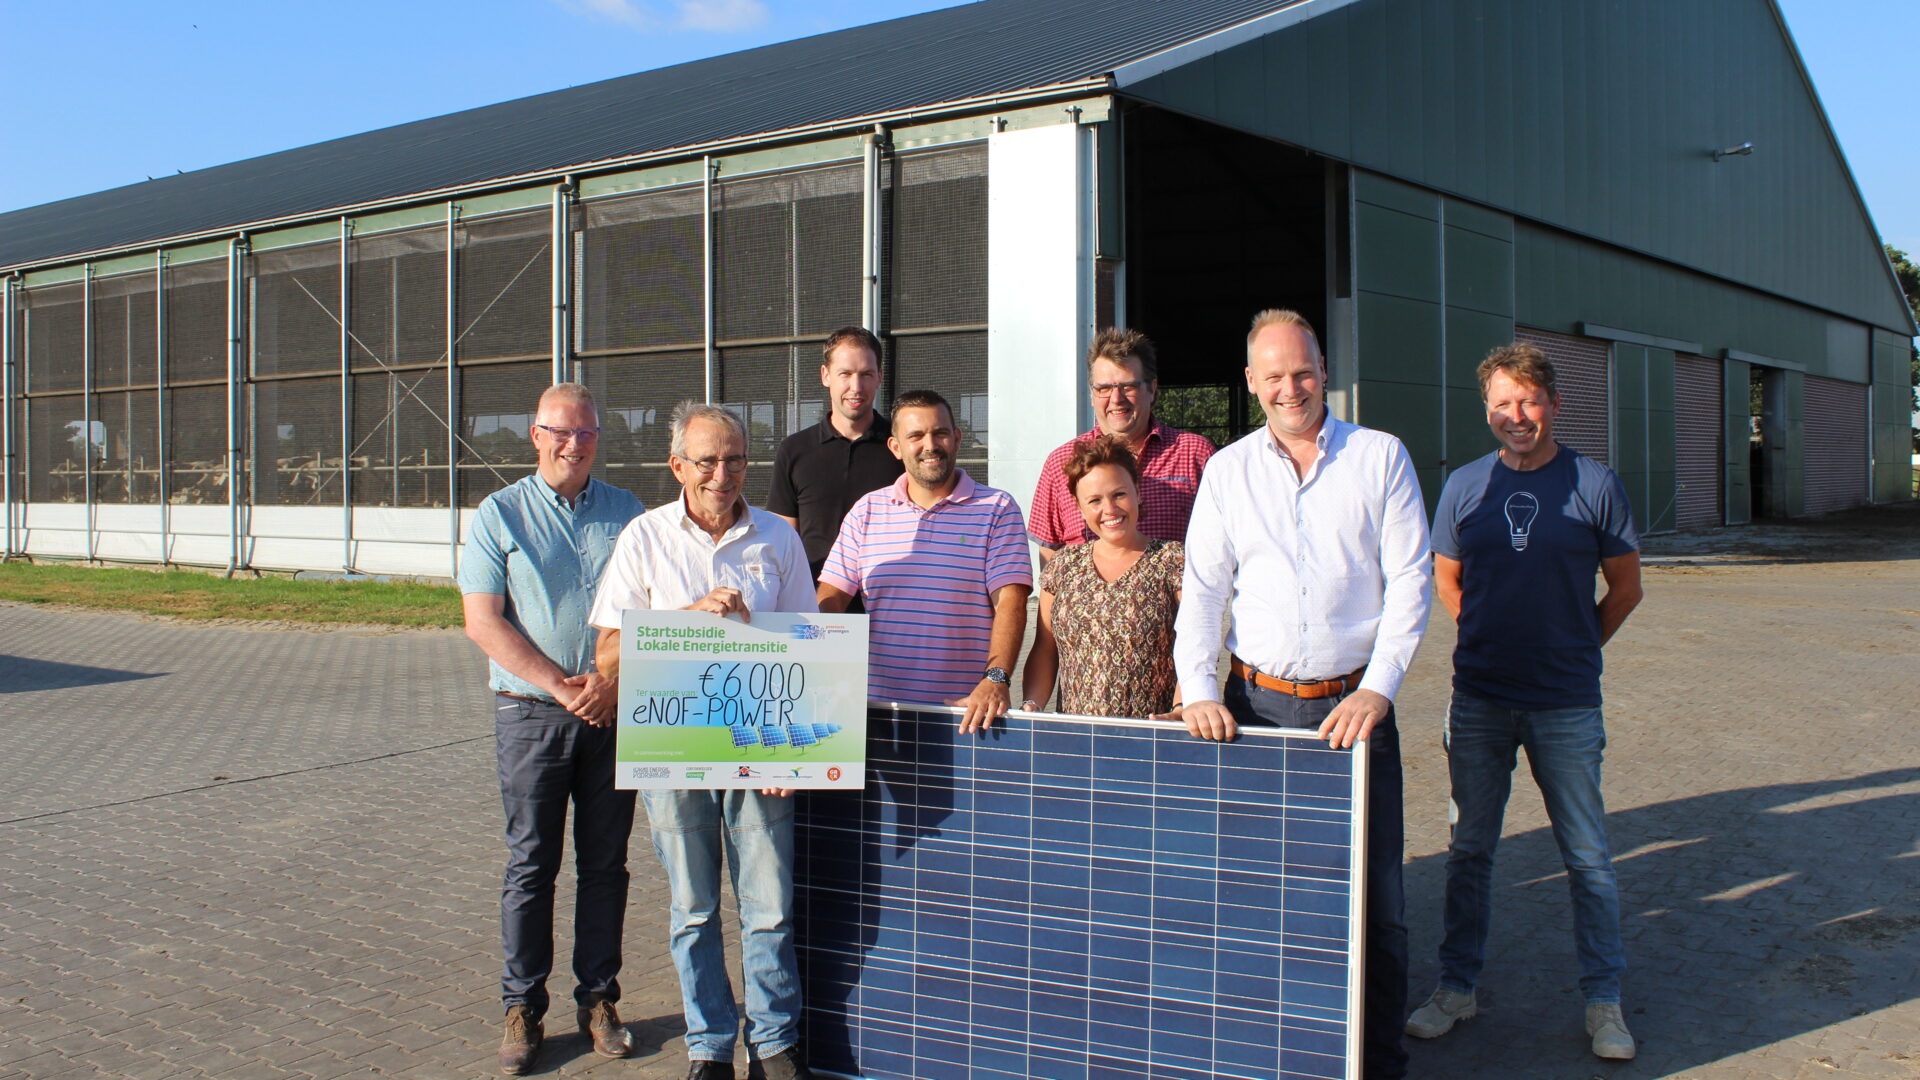 Decoratieve afbeelding van initiatiefnemers van een energiecollectief bij een zonnepaneel en een cheque